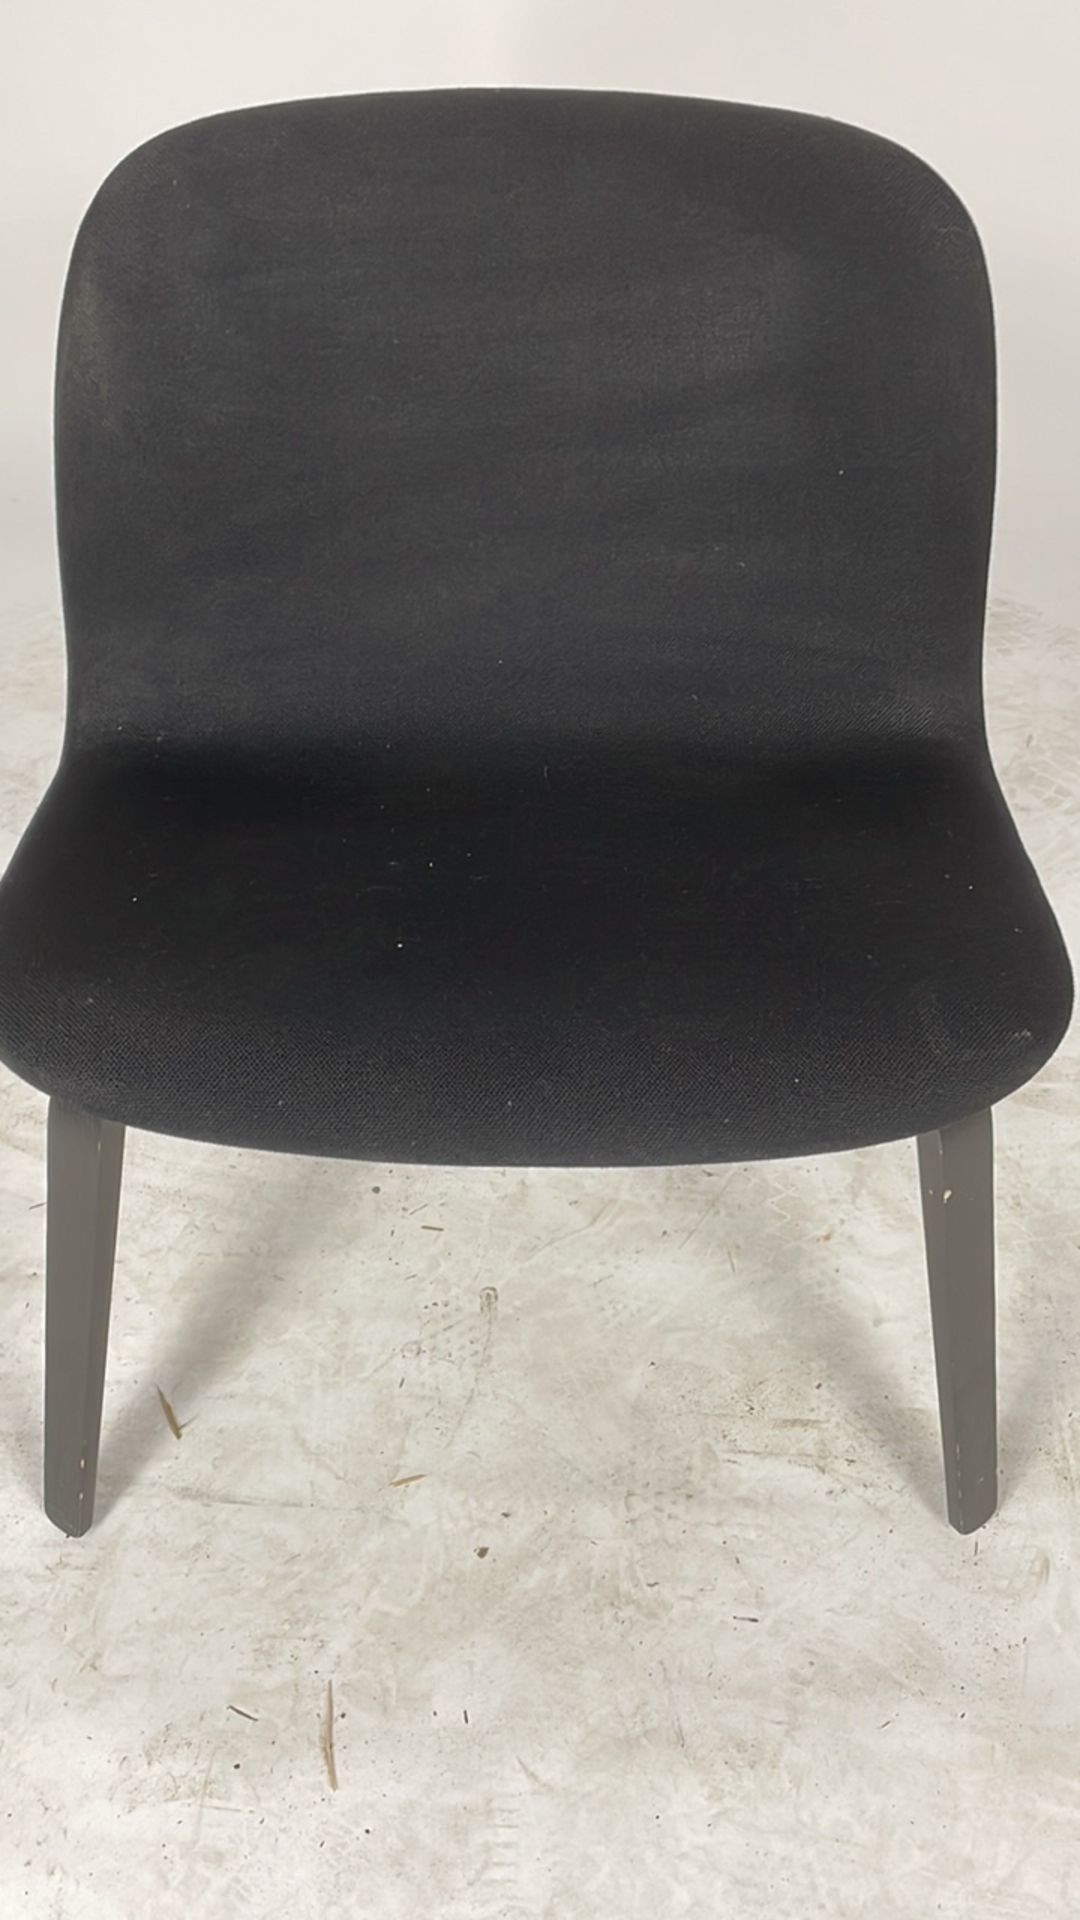 Black urban chair.